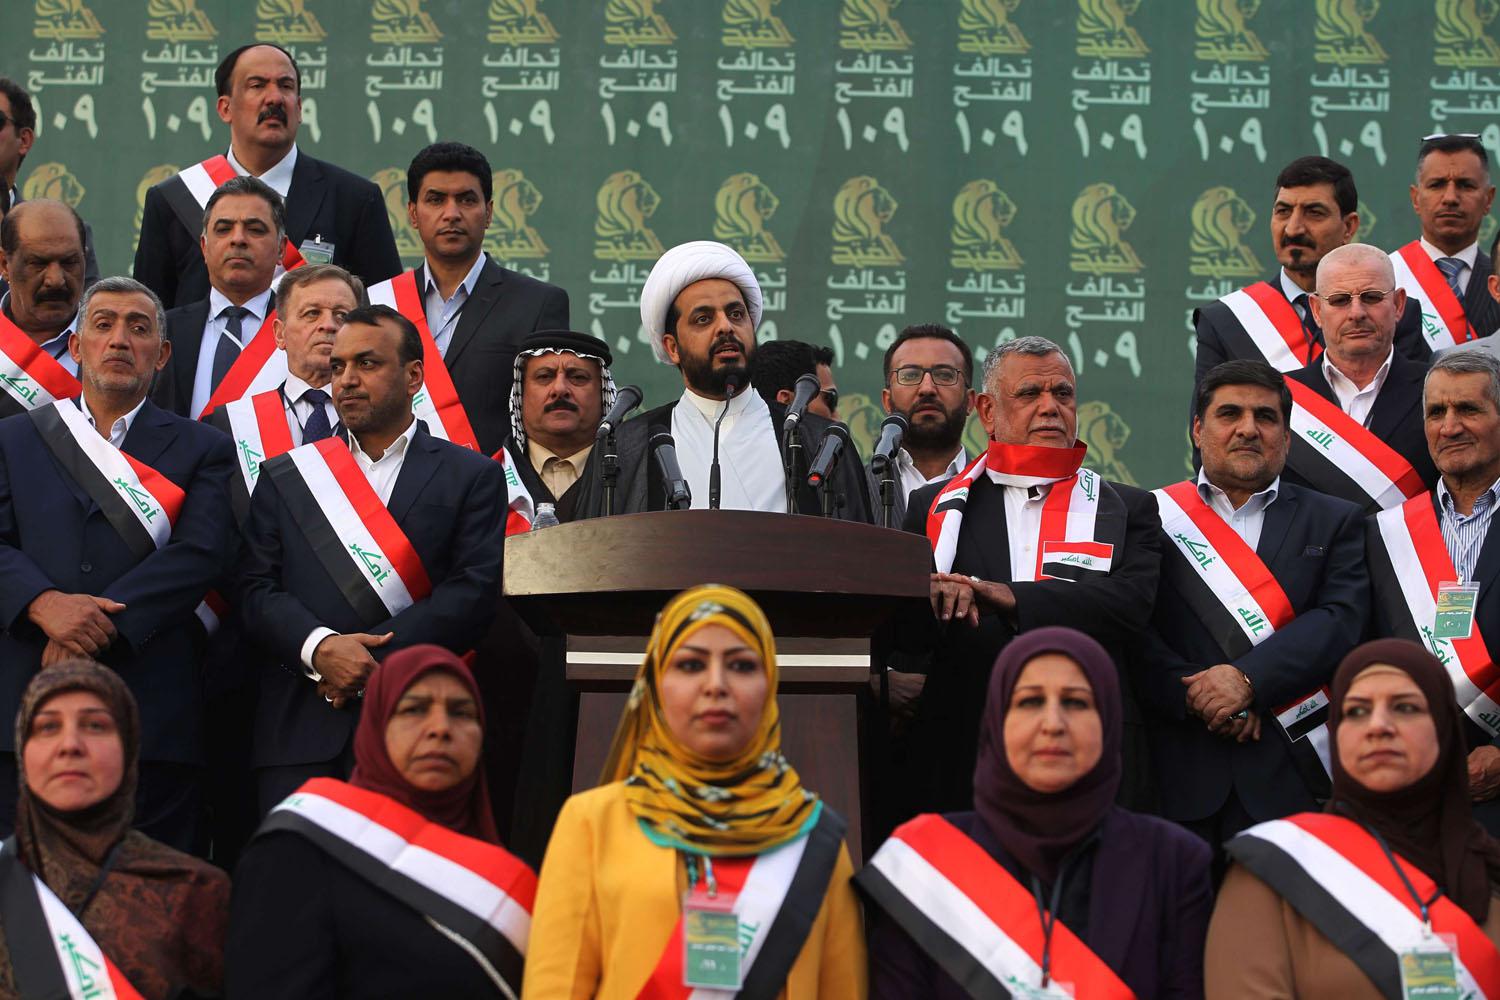 قادة الميليشيات العراقية يرشحون انفسهم للبرلمان